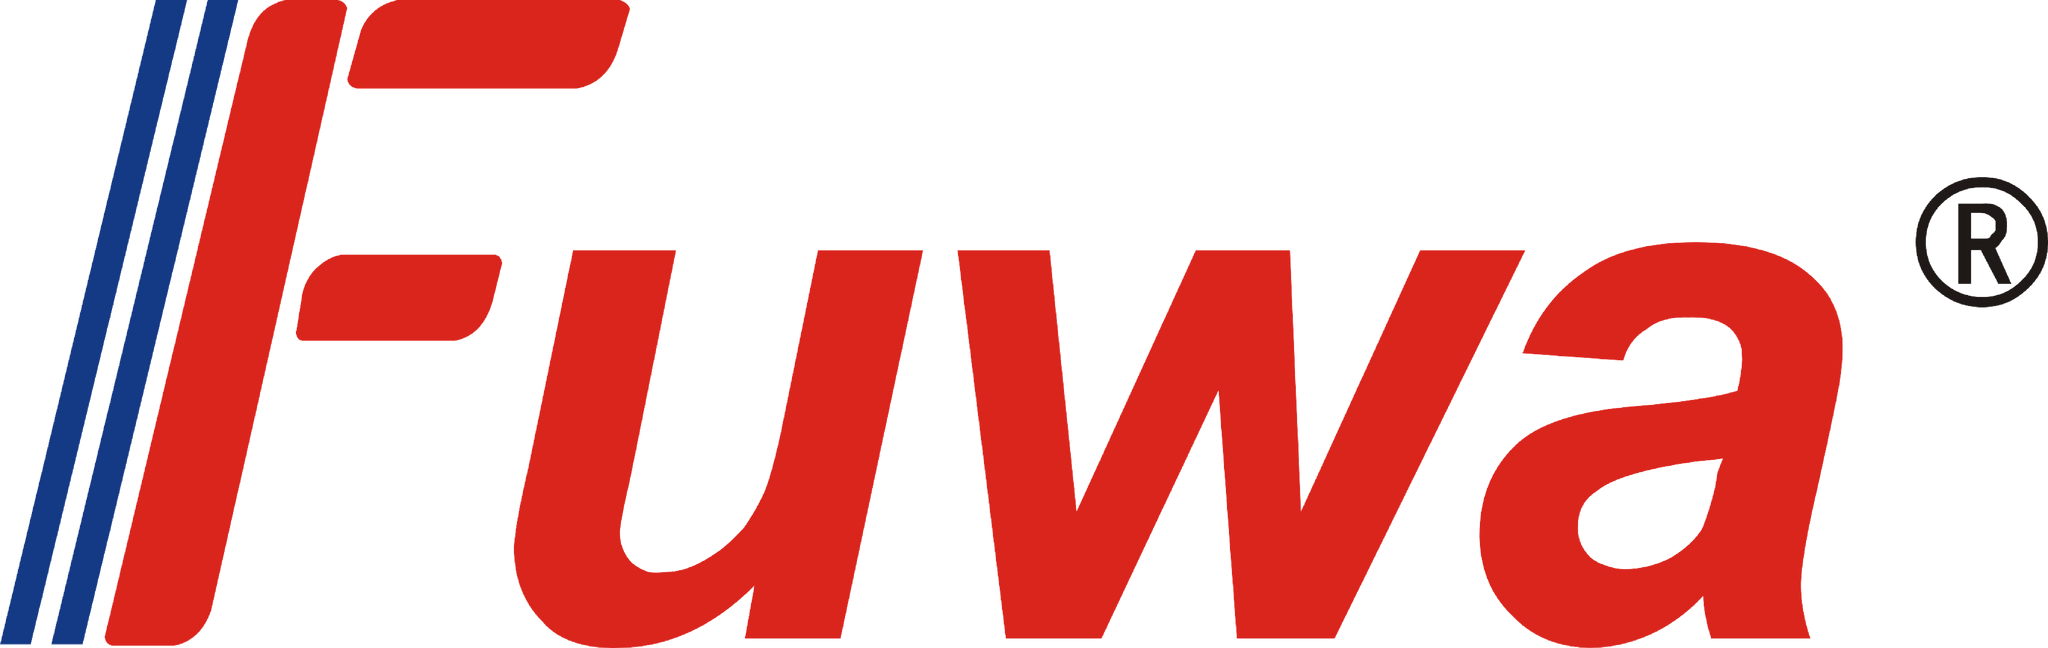 Fuwa Logo - Guangdong FUWA Equipment Manufacturing Co Ltd Europe 2018